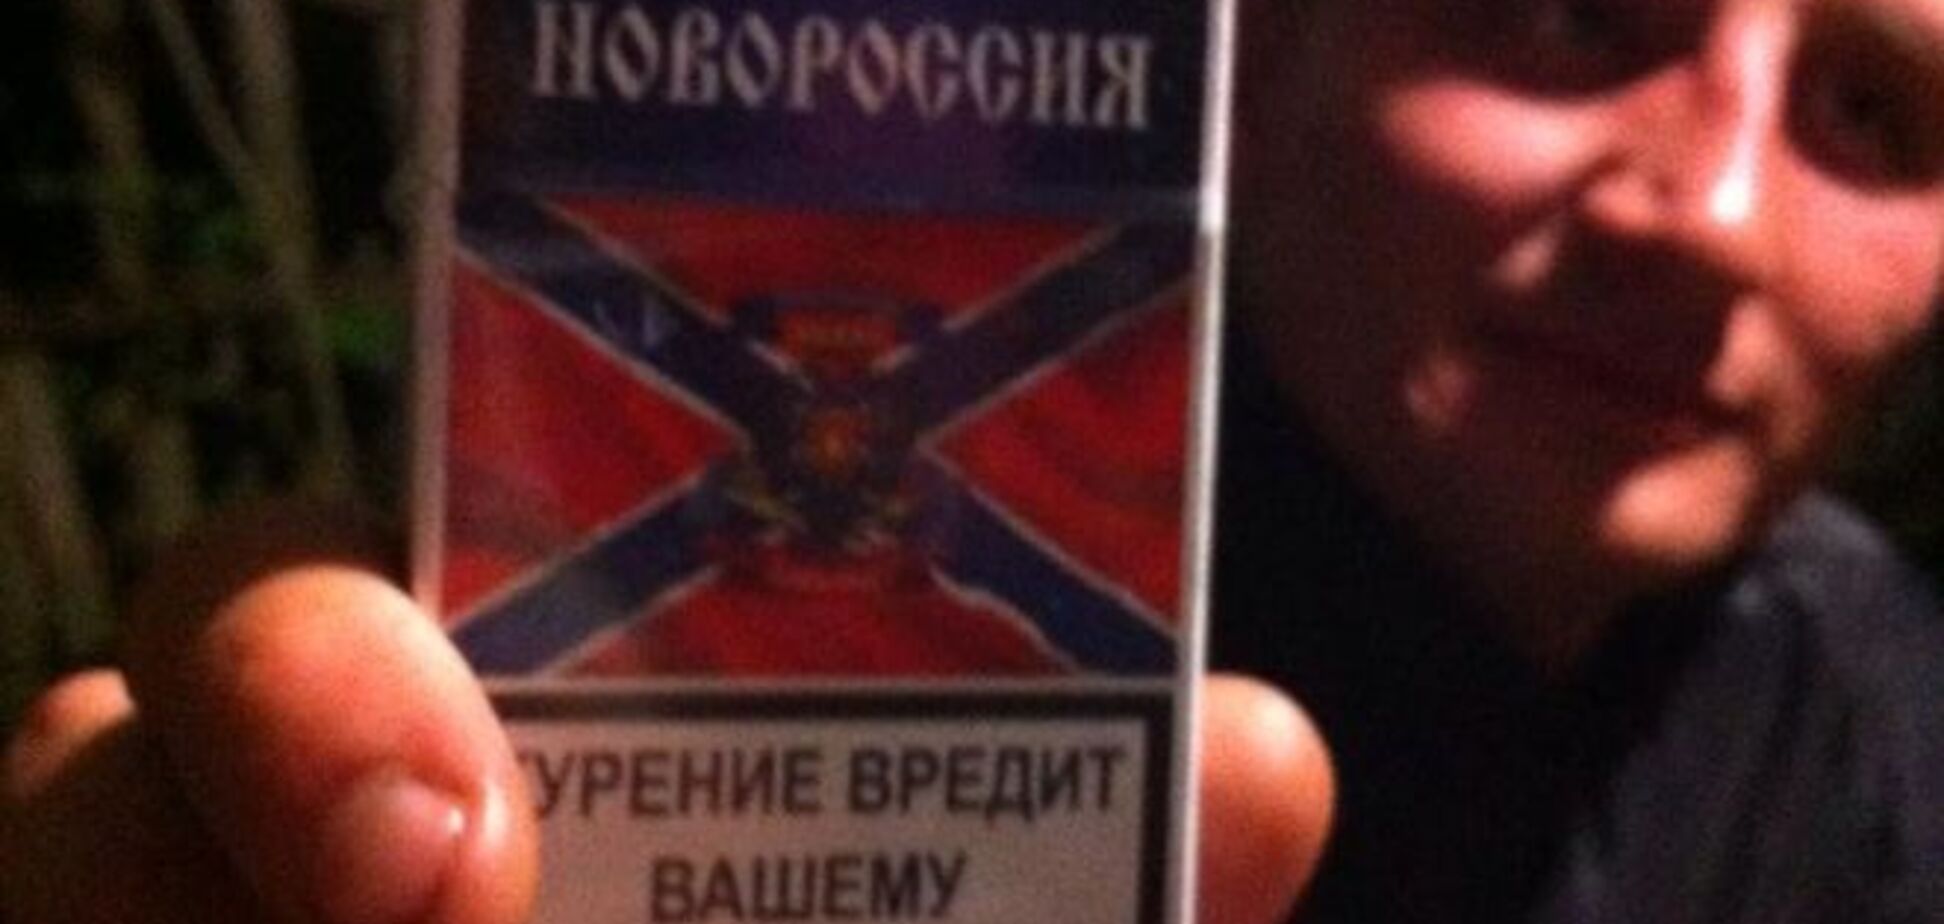 'Дело – табак': журналист рассказал, как на Донбассе прививают любовь к 'Новороссии'